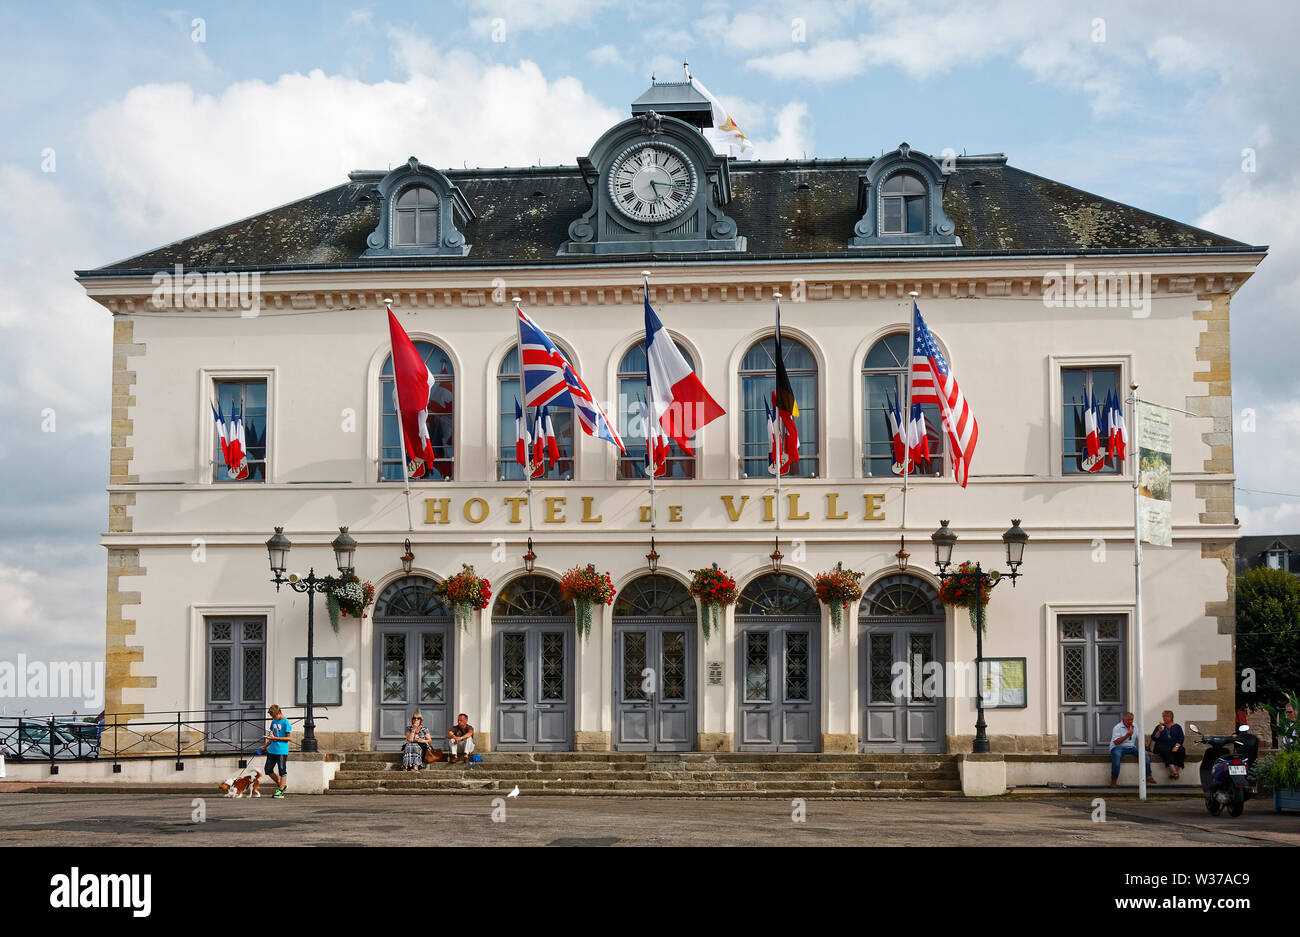 Hotel de Ville, Rathaus, 1837, Altbau, bunte Fahnen, Blumen, Vieux Bassin; Hafen; Europa, Normandie Stockfoto